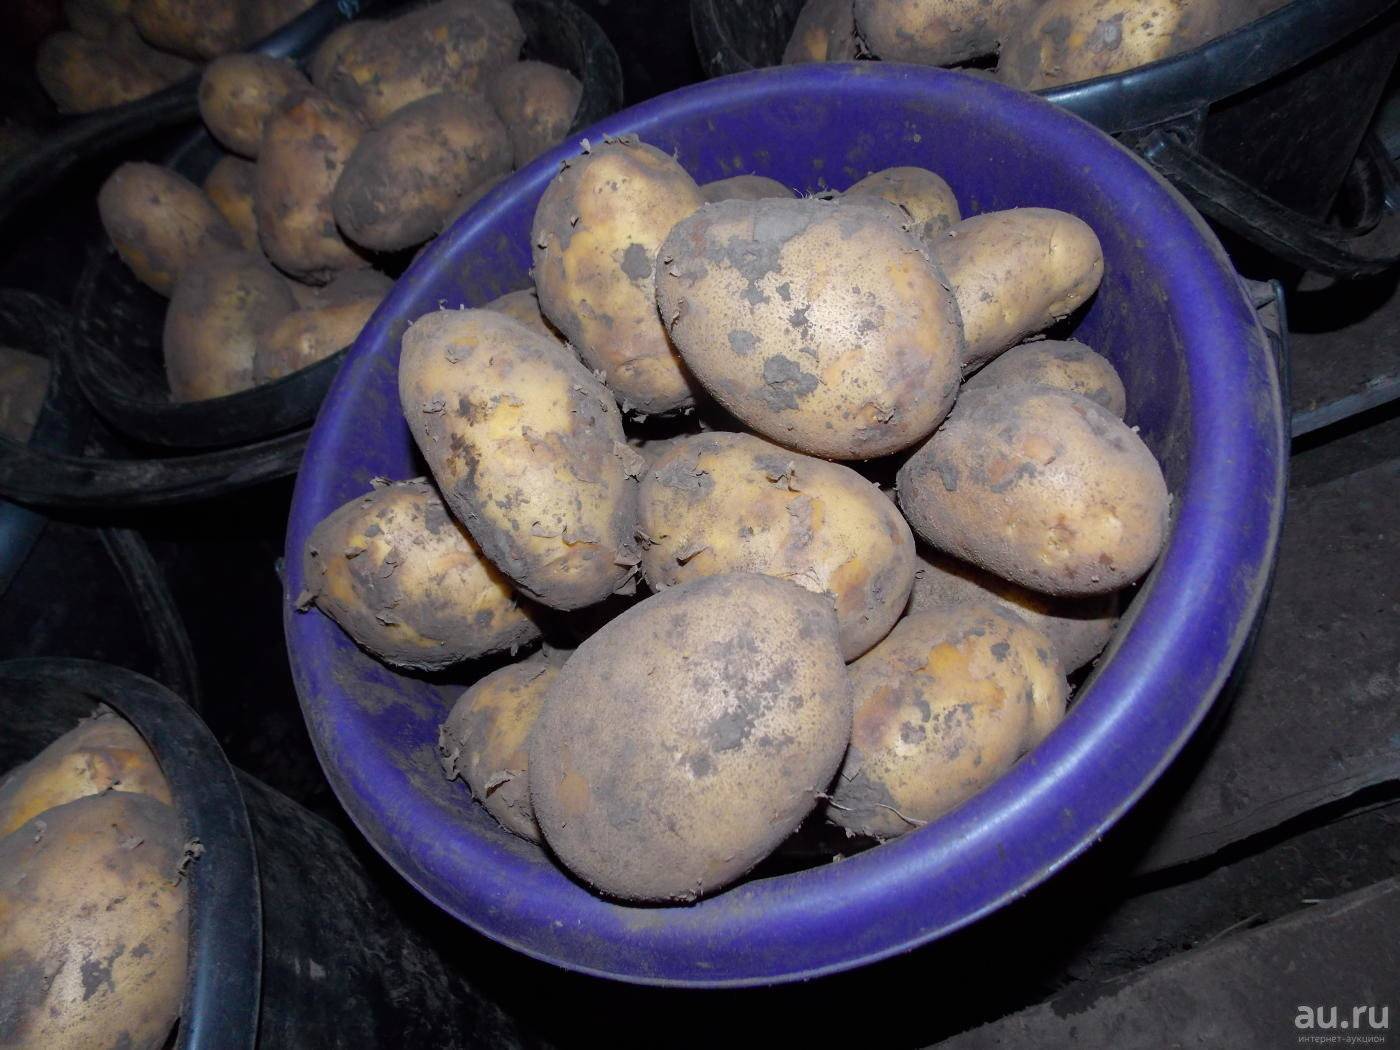 Картофель санте – описание сорта, фото, отзывы